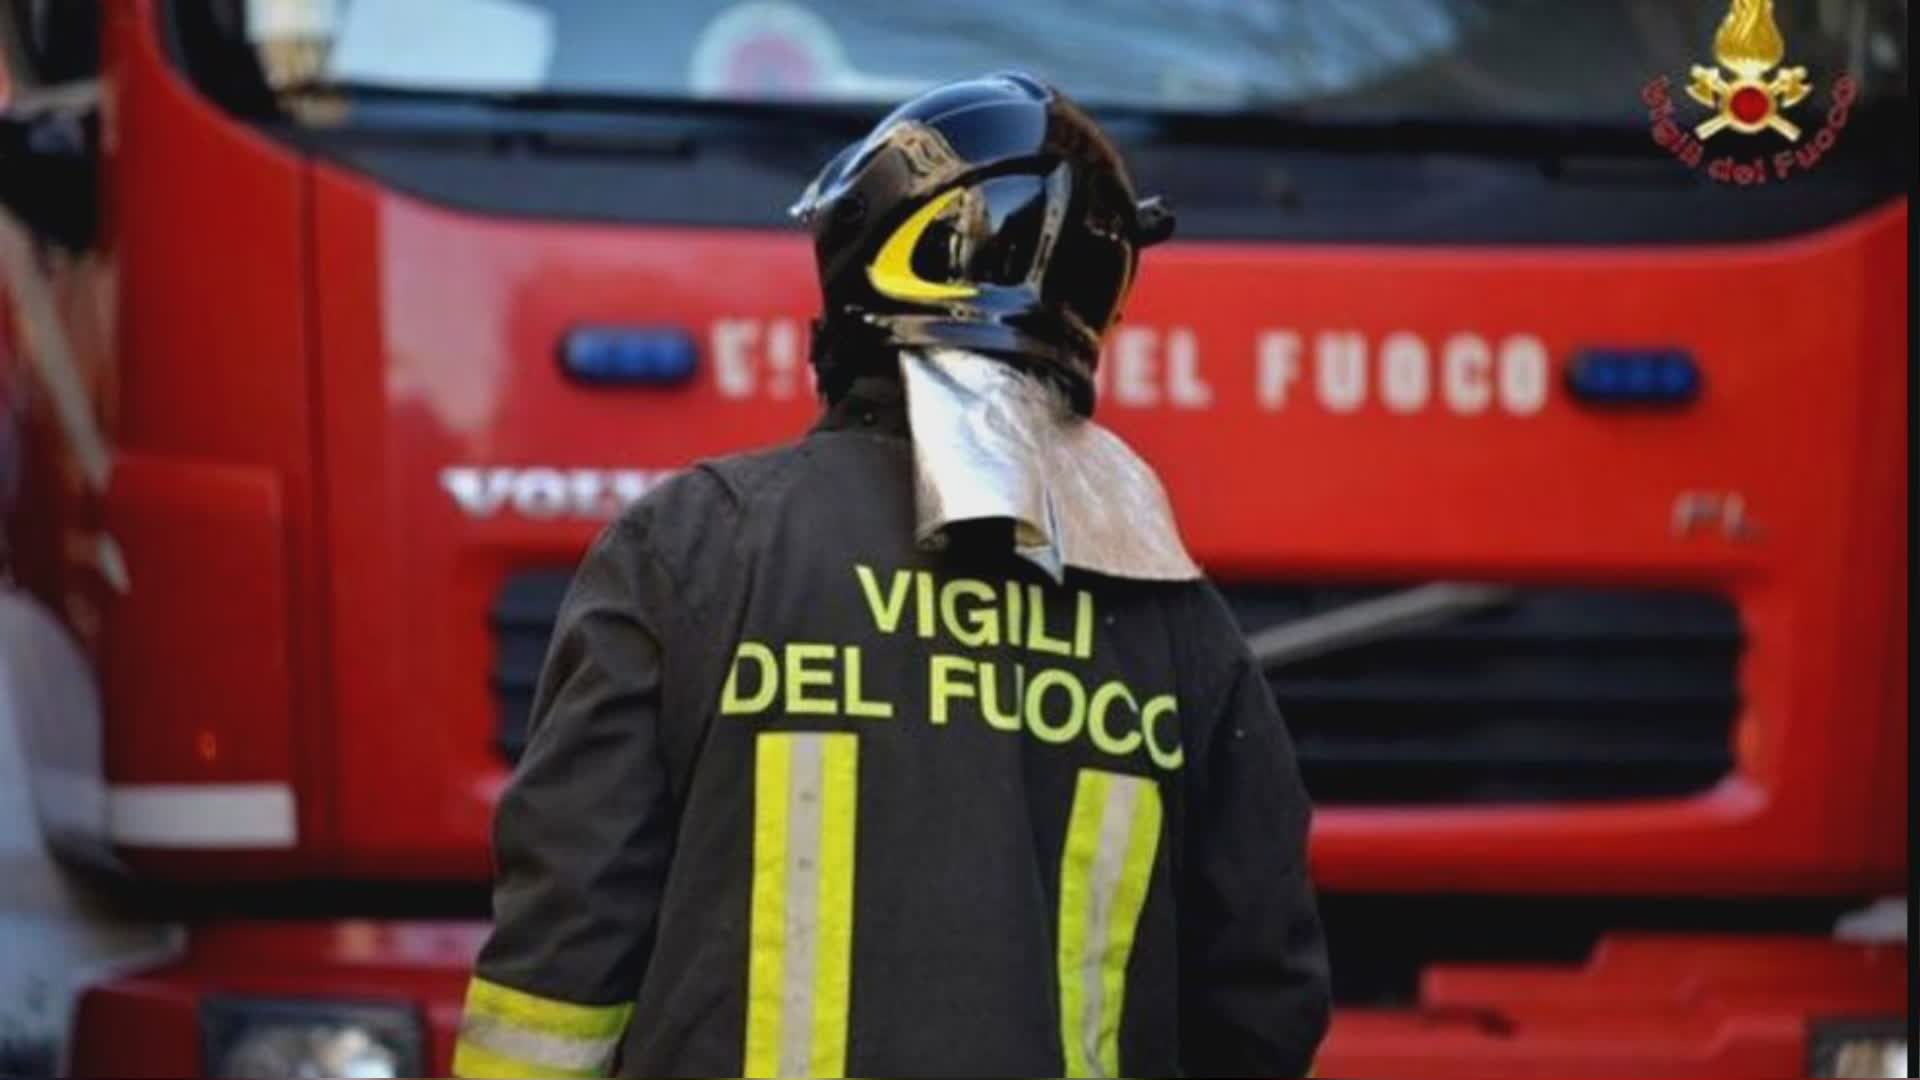 Val d'Aveto: muore turista bresciano travolto da una frana